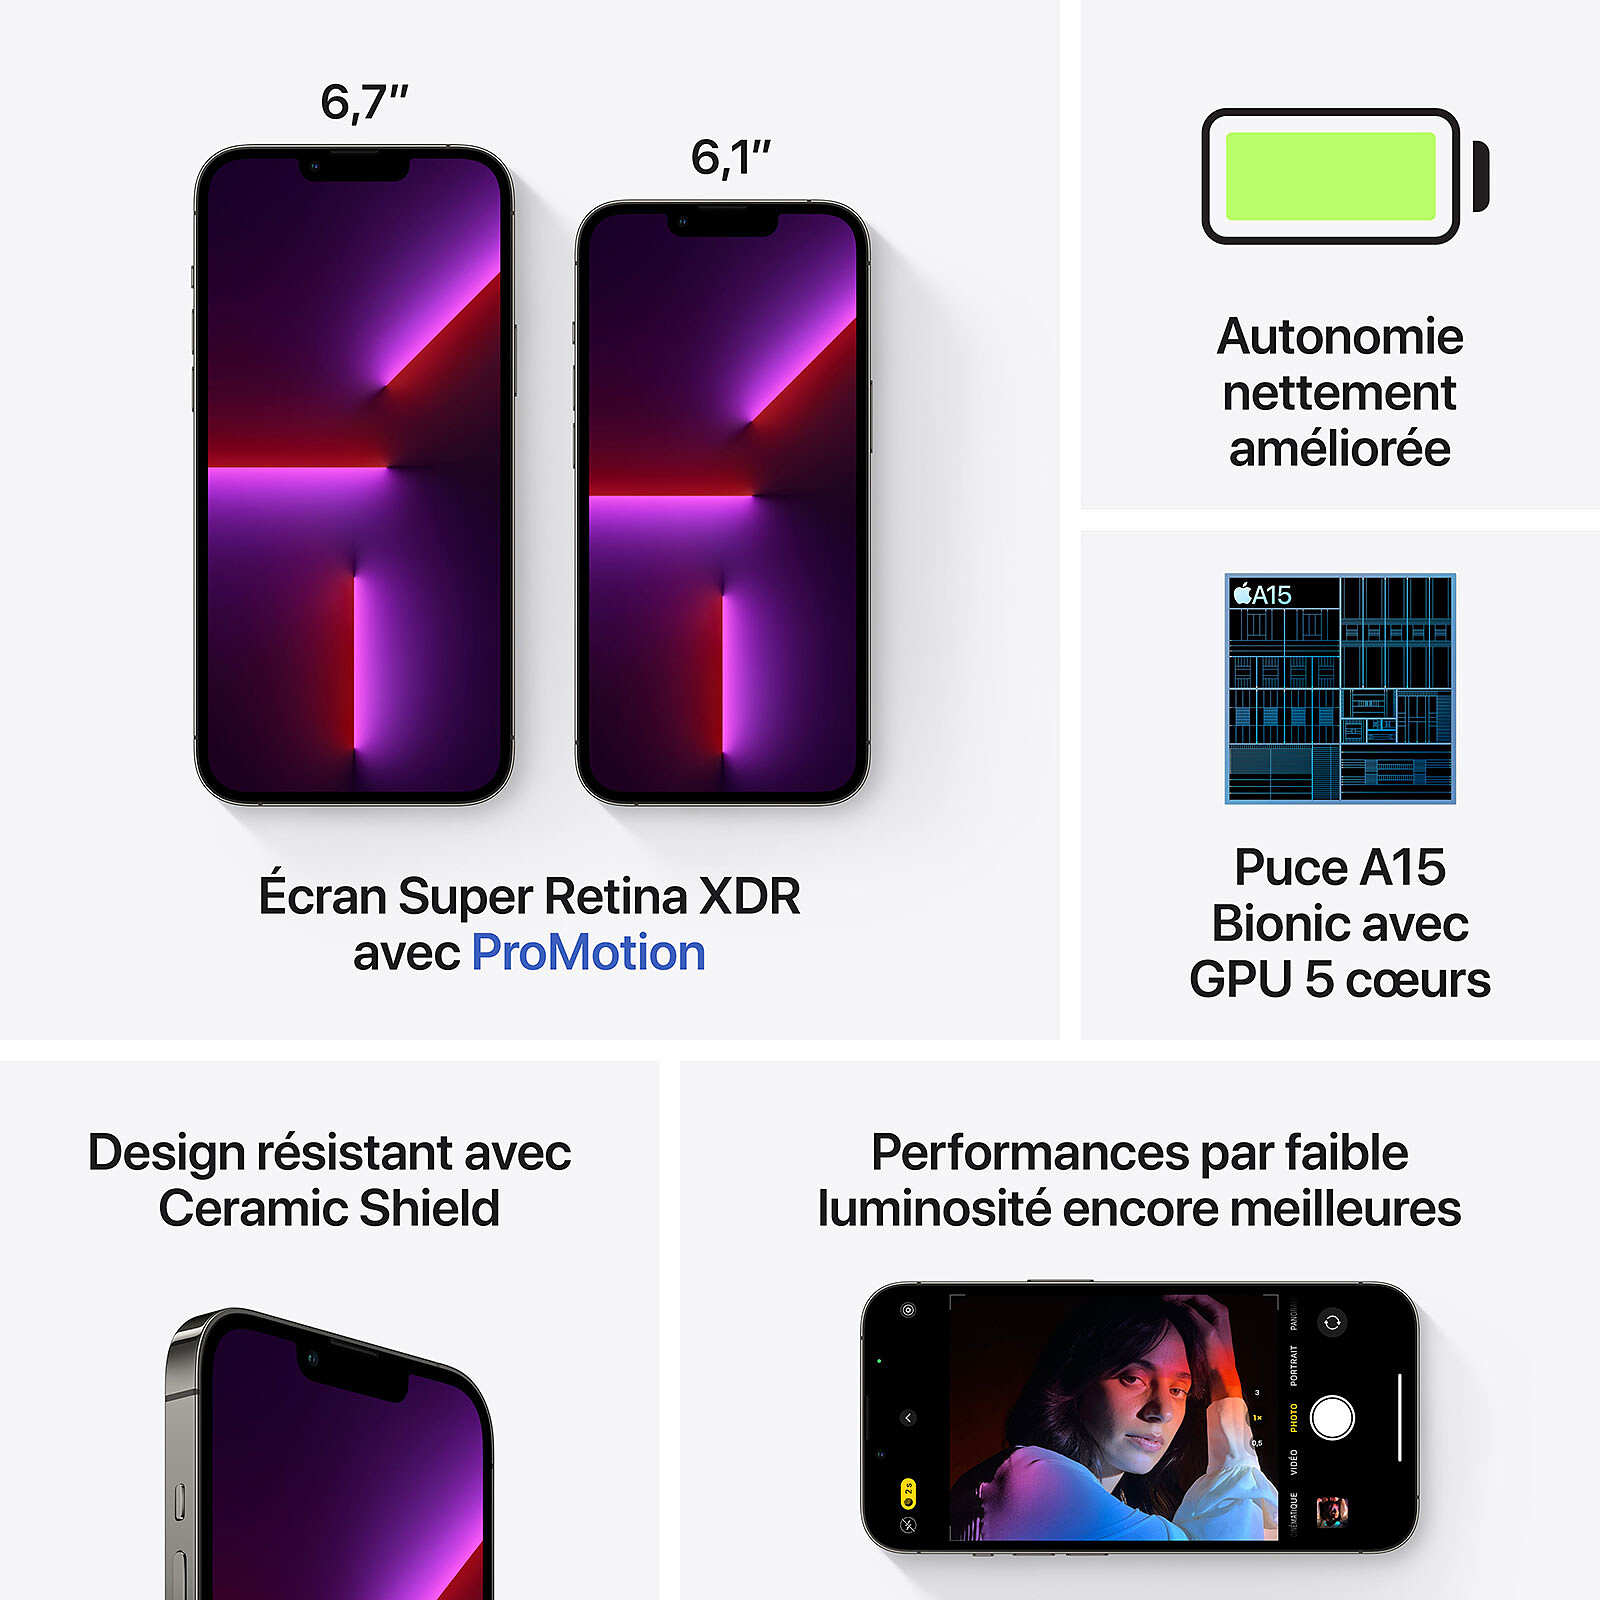 Apple iPhone 13 Pro Max: Fiche Technique, Prix et Avis - CERTIDEAL